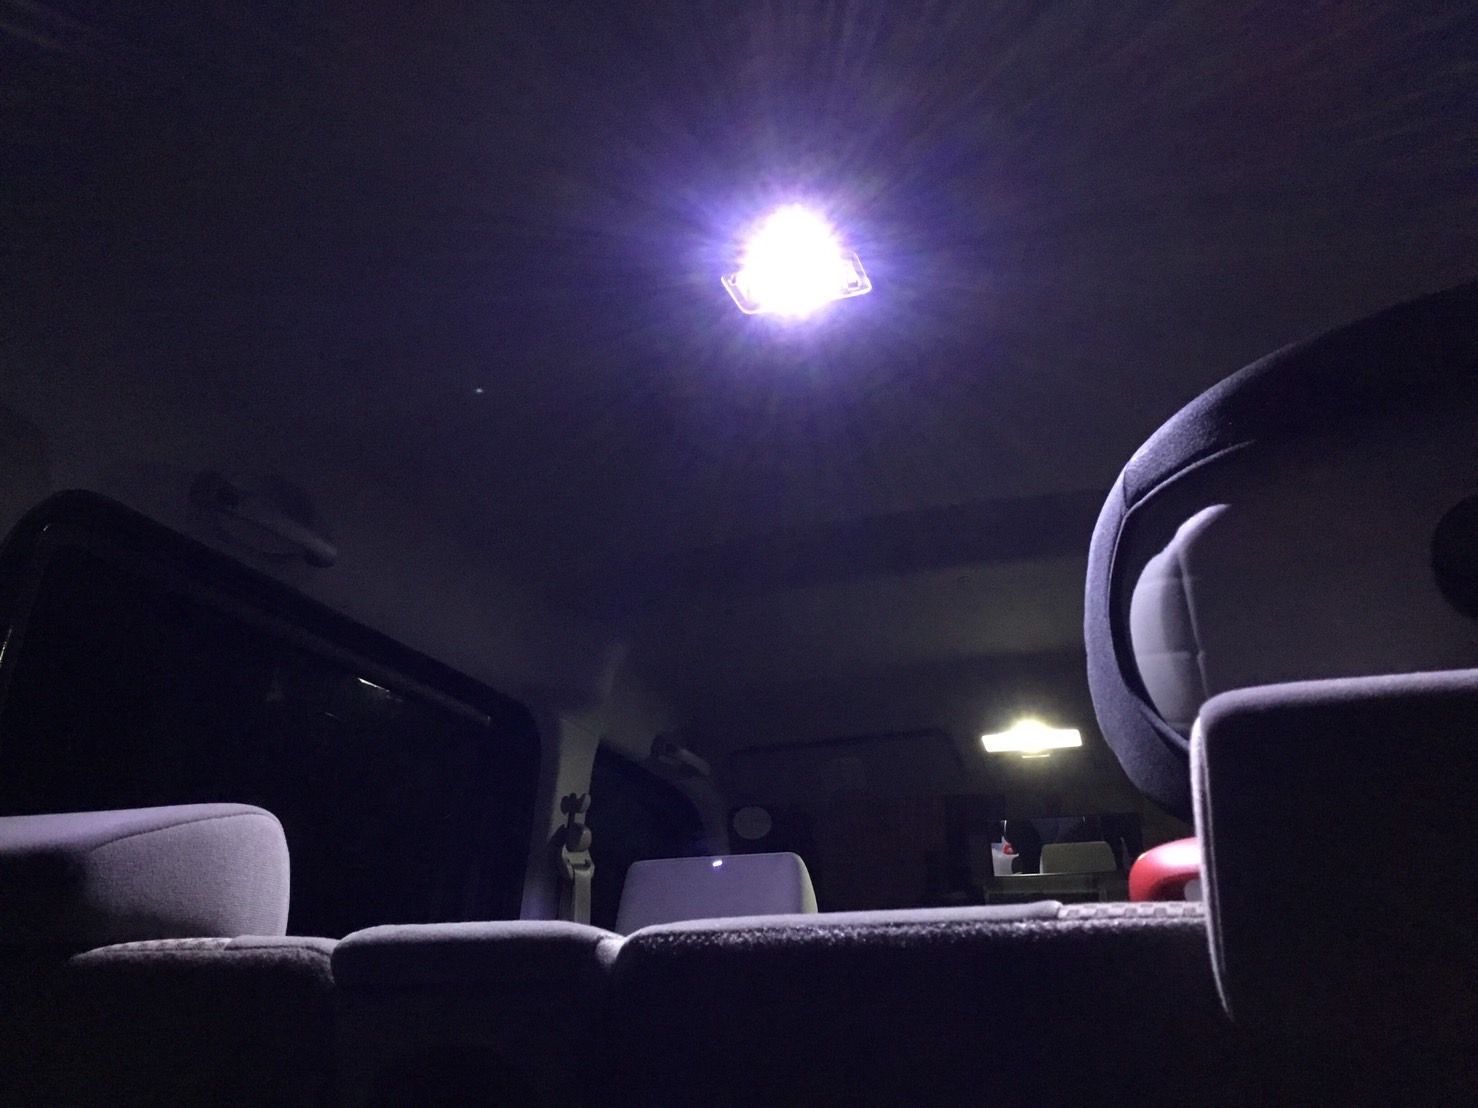 MJ23S AZ-ワゴン(AZワゴン) [H20.9〜H24.9] COB全面発光 LED ルームランプ バックランプ H4 ヘッドライト ウェッジ球セット 車内灯 交換用